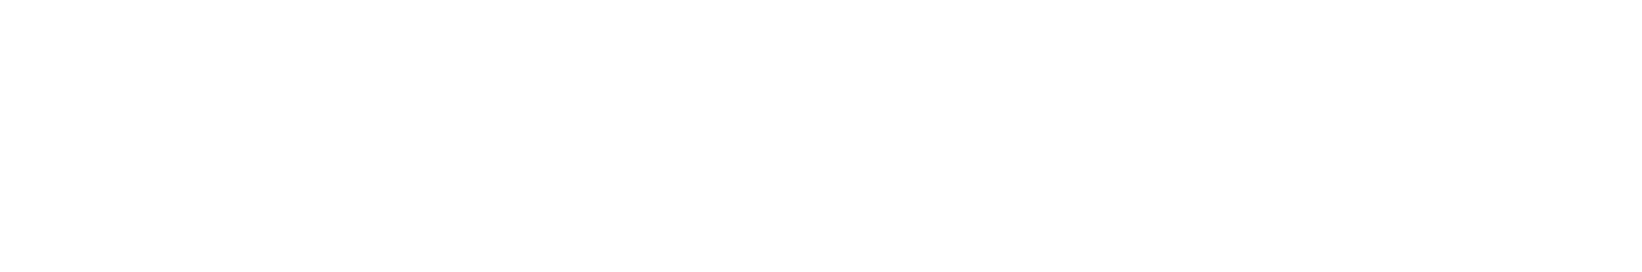 WH Smith Logo groß für dunkle Hintergründe (transparentes PNG)